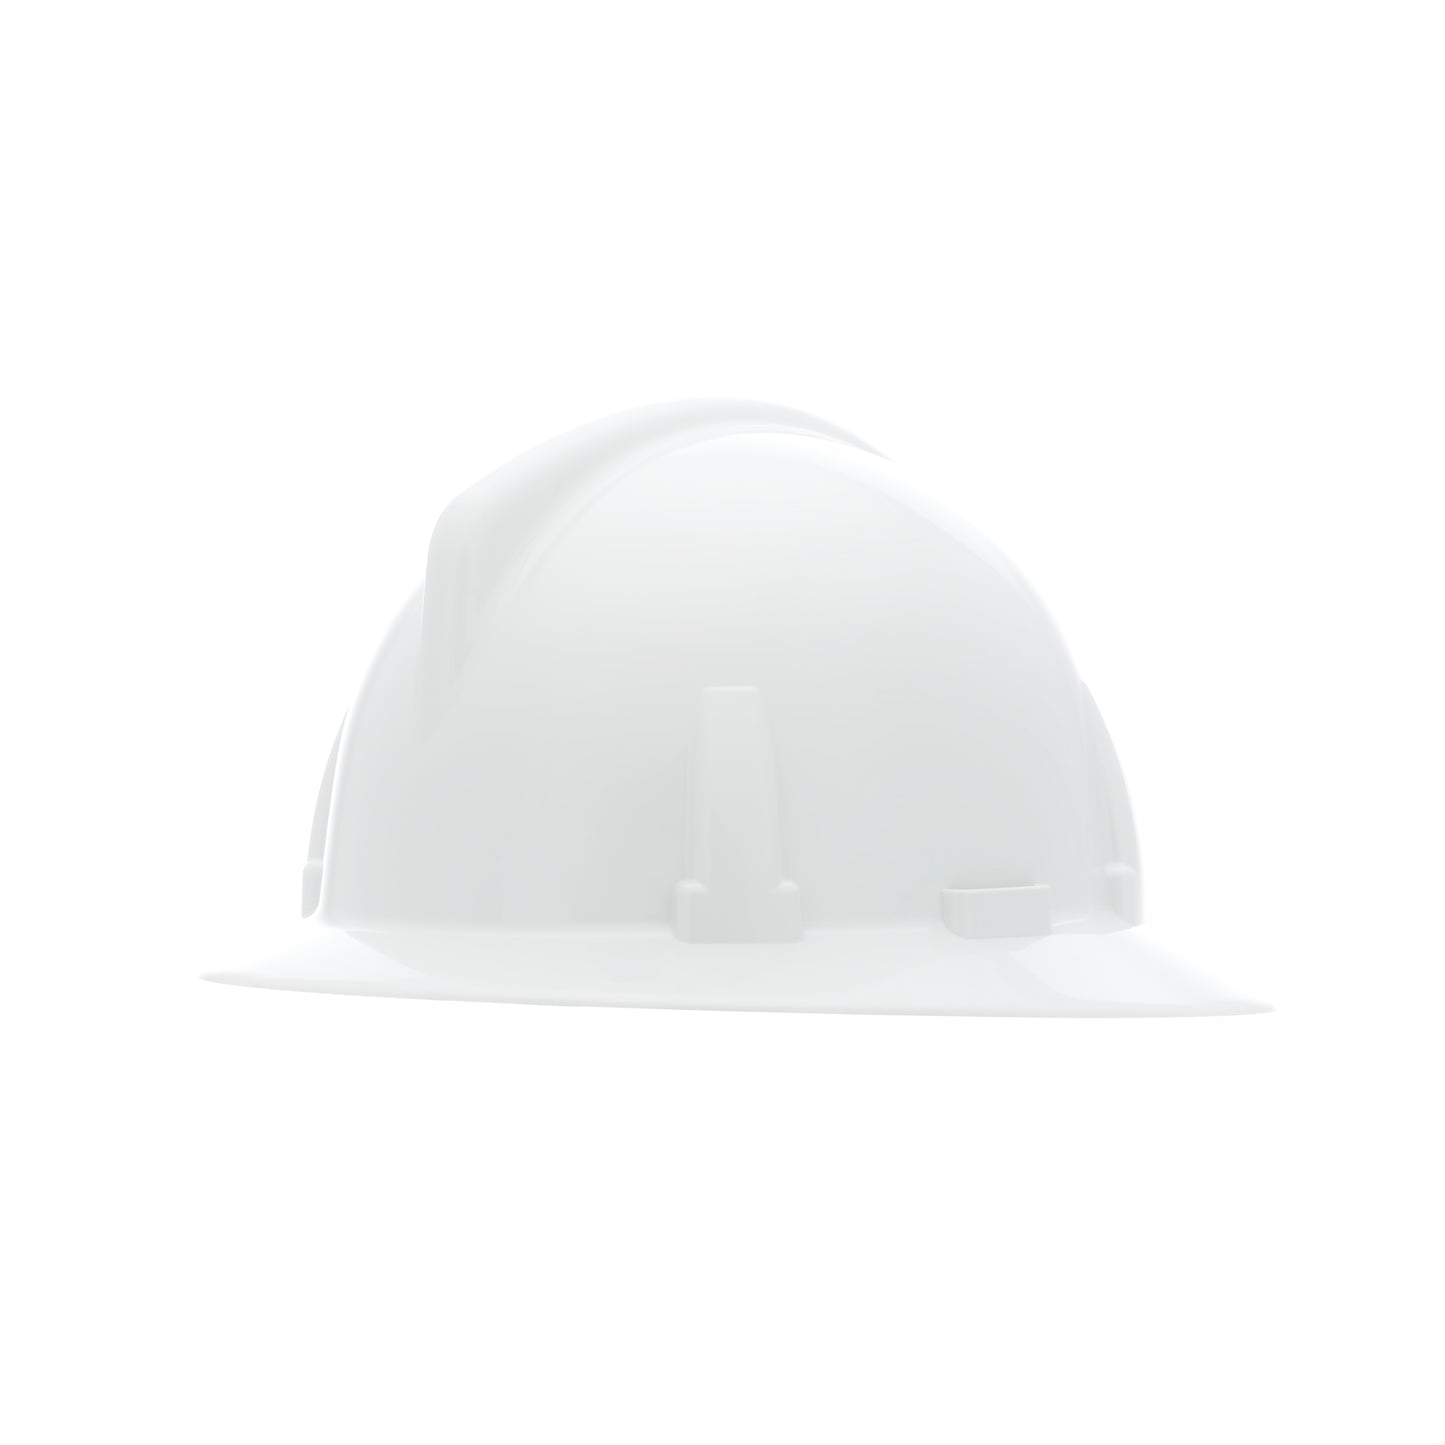 Topgard Non-Slotted Hat, White, w/Fas-Trac III Suspension Full Brim